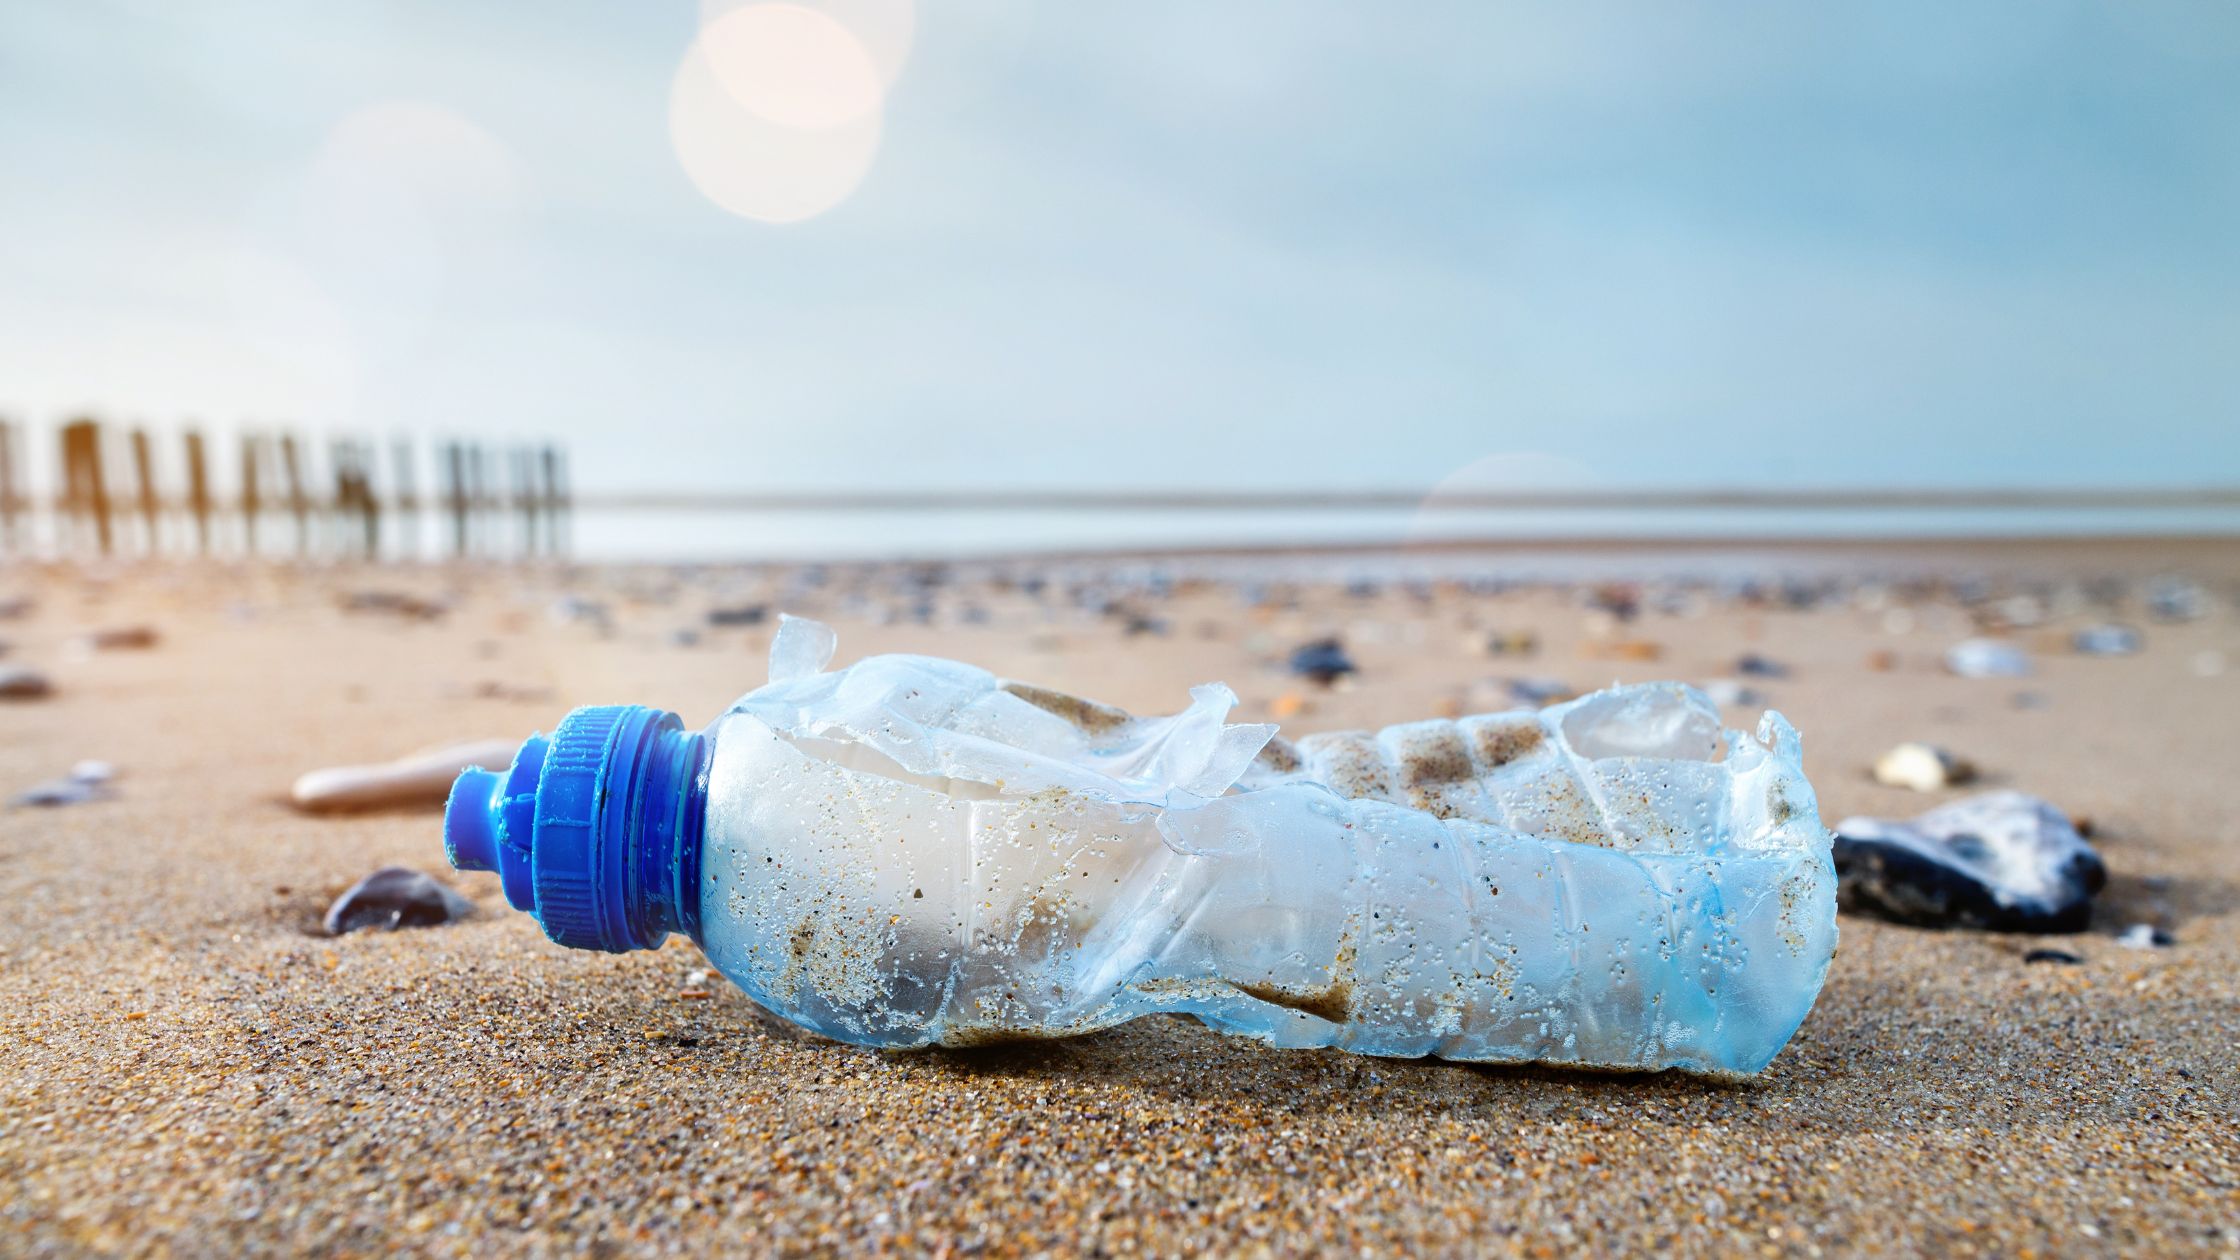 زجاجة بلاستيكية يتم جمعها من الشاطئ بواسطة تقنية الياكوستيك لإعادة تدويرها وصنع الألواح الصوتية